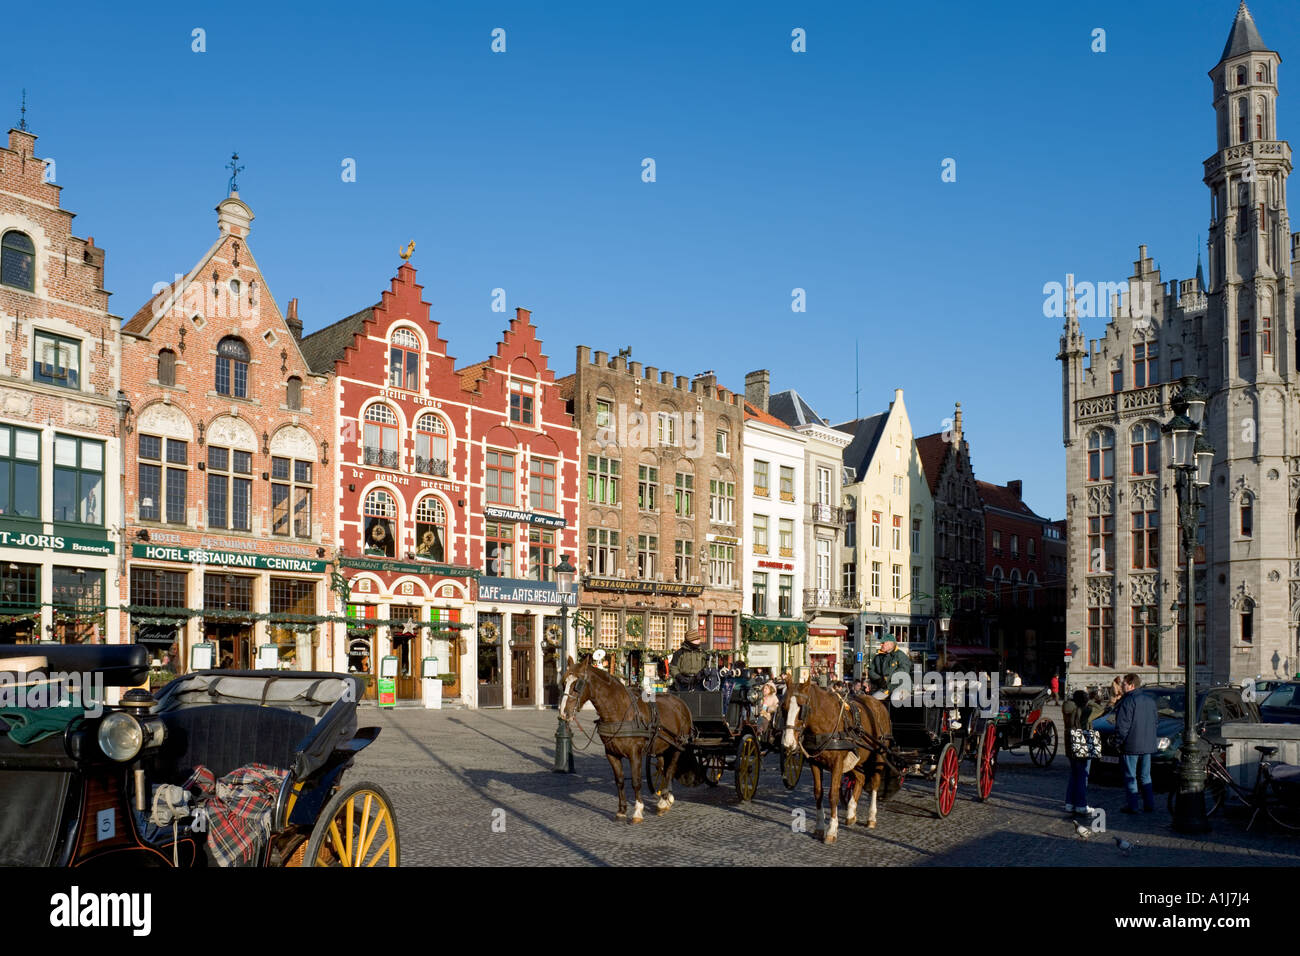 Main Square (Markt) in winter, Bruges, Belgium Stock Photo